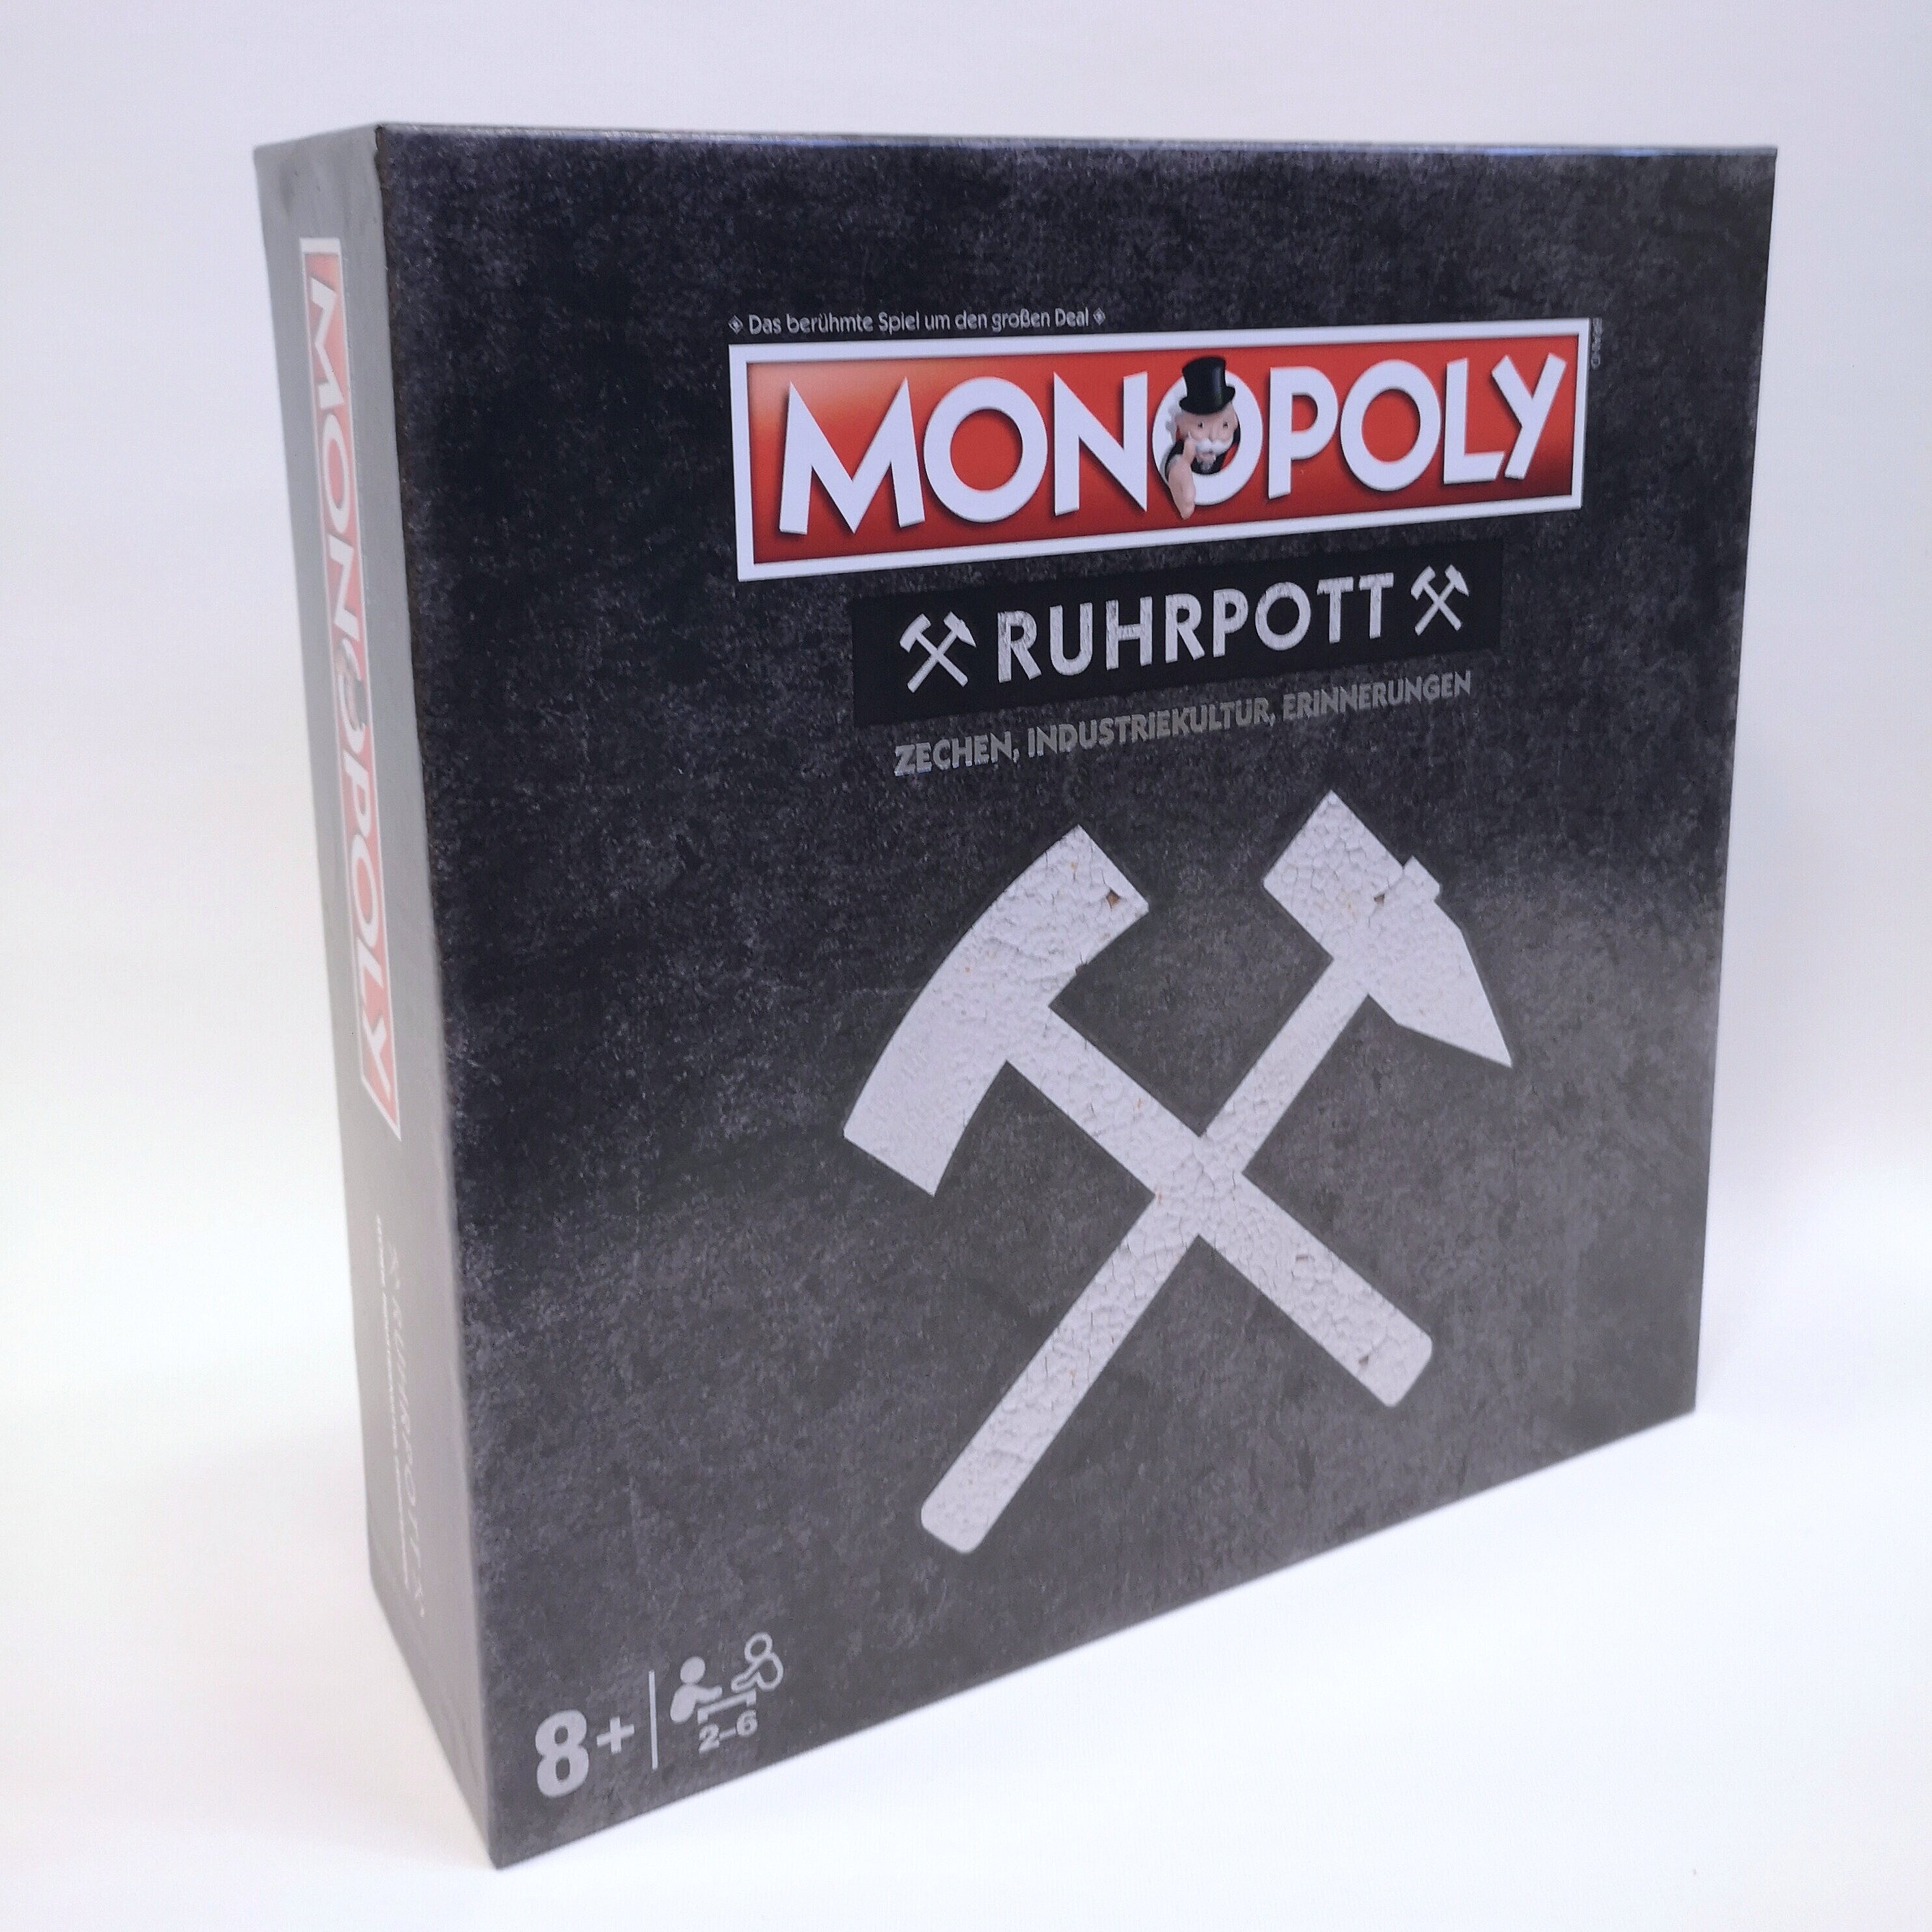 Umkarton des Ruhrpott Monopolys mit Schlägel & Eisen Motiv